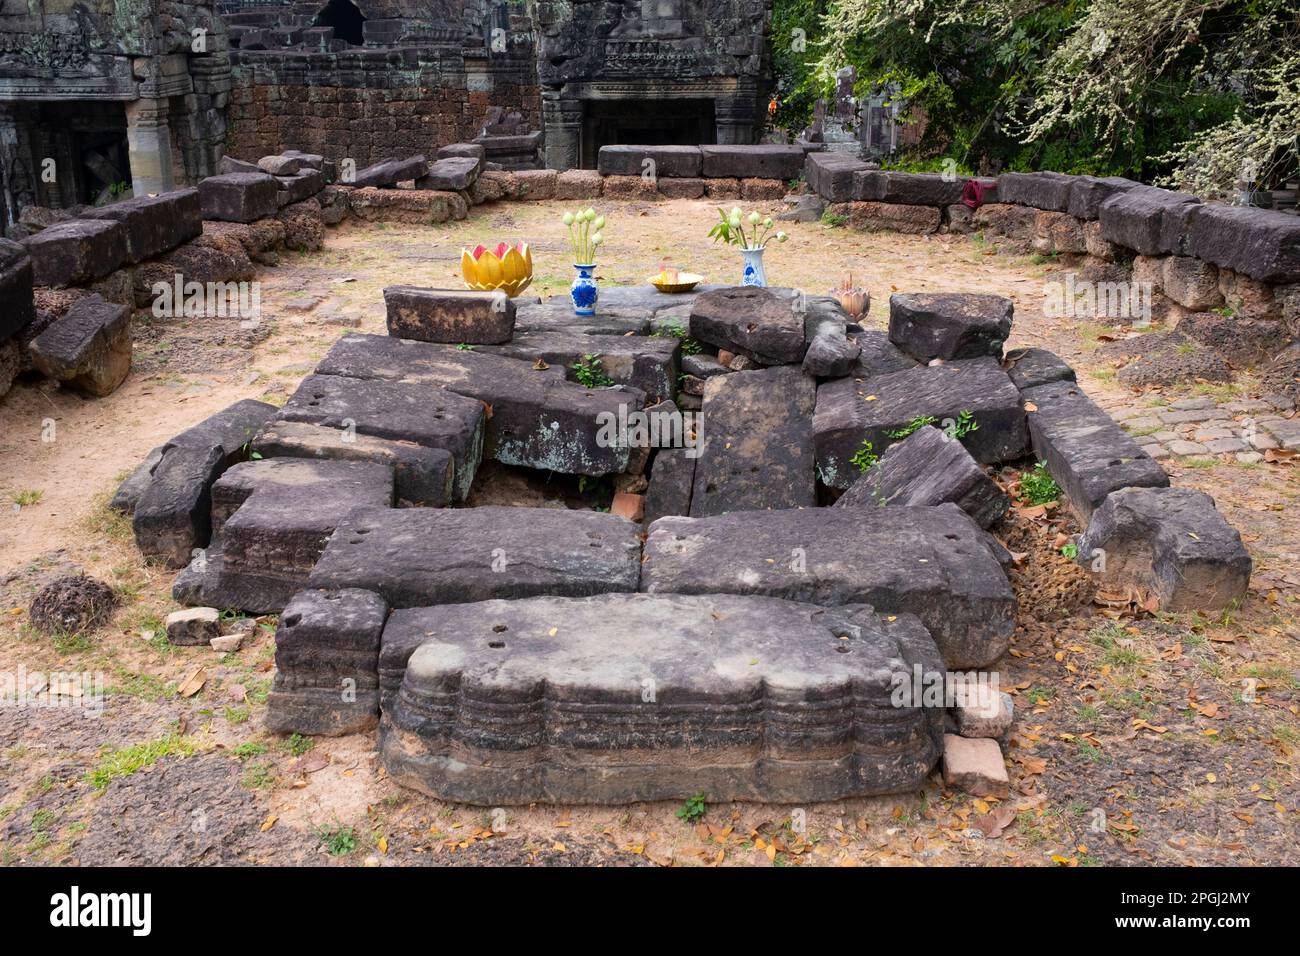 Cambogia: Vecchio santuario collassato, Preah Khan (Tempio della Sacra spada). Preah Khan è stato costruito nel tardo 12th ° secolo (1191) da Jayavarman VII e si trova appena a nord di Angkor Thom. Il tempio fu costruito sul luogo della vittoria di Jayavarman VII sui Chams invasori nel 1191. Era il centro di una grande organizzazione, con quasi 100.000 funzionari e funzionari. In un tempo era un'università buddista. La divinità primaria del tempio è la boddhisatva Avalokiteshvara, nella forma del padre di Jayavarman. Foto Stock